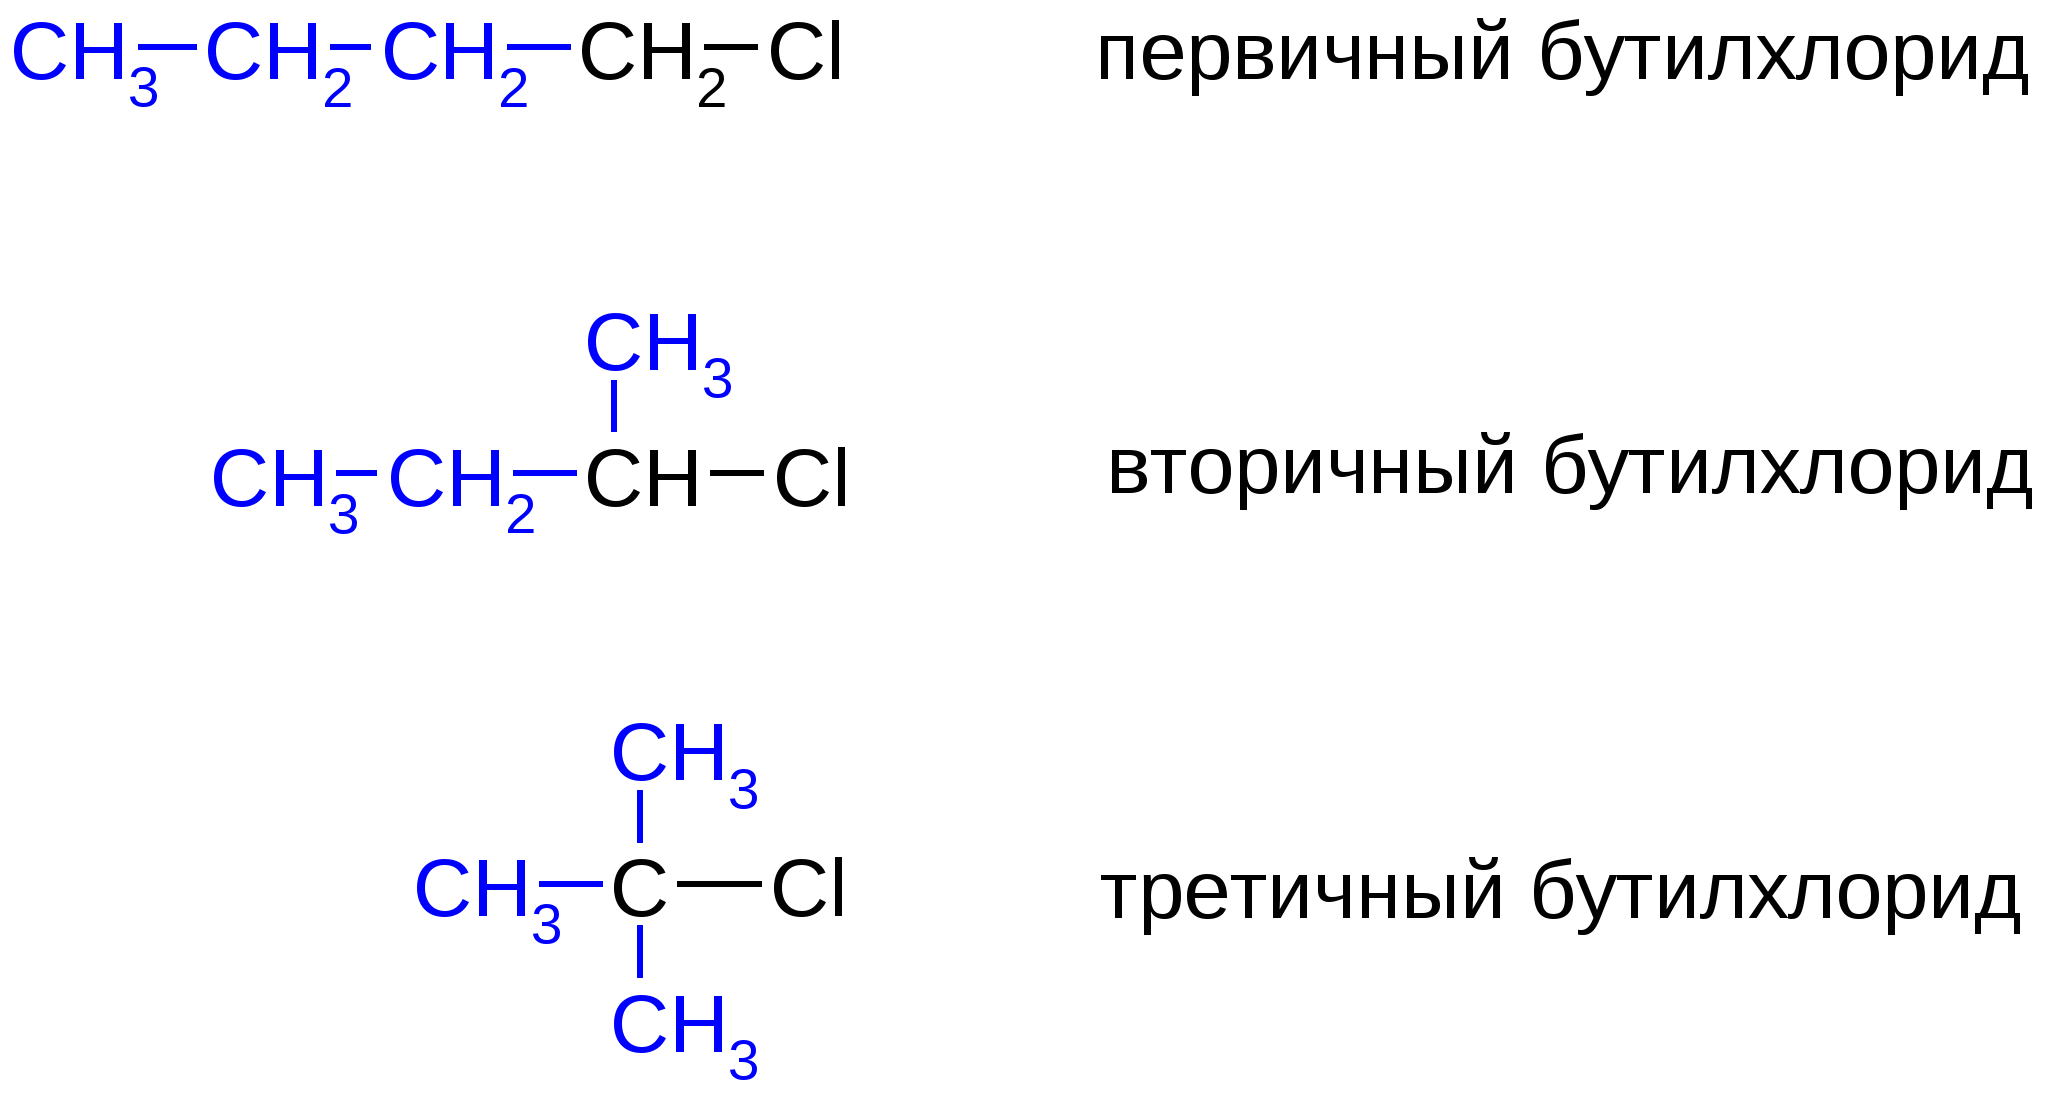 Третичный галогенопроизводные. Первичные вторичные и третичные галогенопроизводные. Бутилхлорид структурная формула. Первичные вторичные галогенопроизводные.